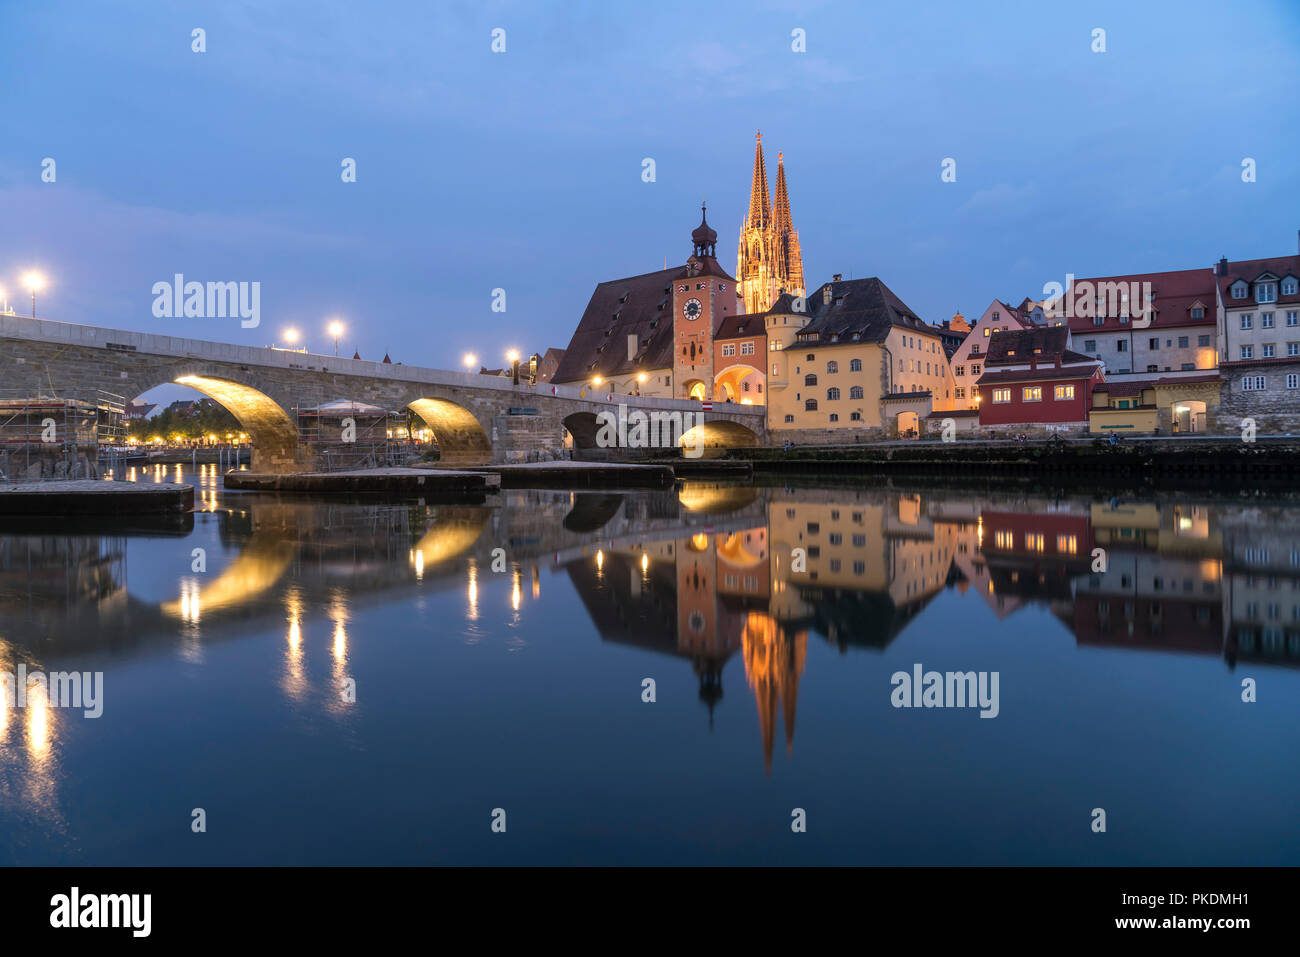 Stadtansicht mit Donau, Altstadt, Steinerne Brücke und Dom St. Peter in der Abenddämmerung, Regensburg, Bayern, Deutschland, Europa | cityscape with D Stock Photo